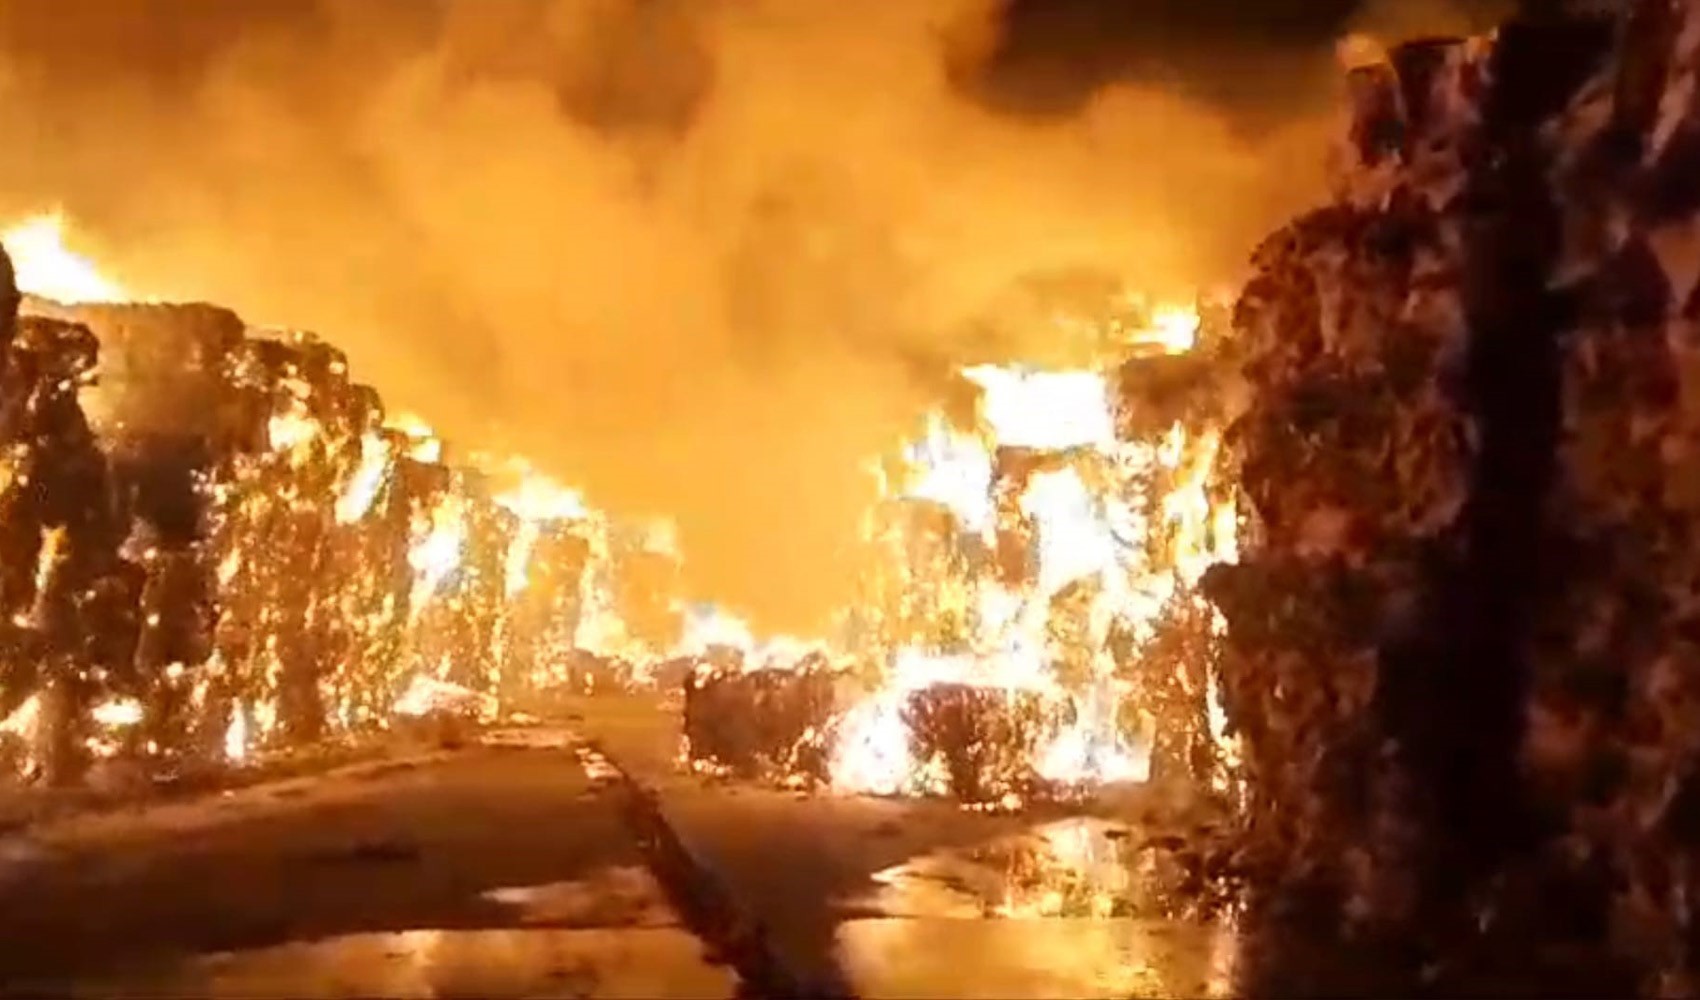 Kipaş Kağıt Fabrikası’ndaki yangın yeniden kontrolden çıktı